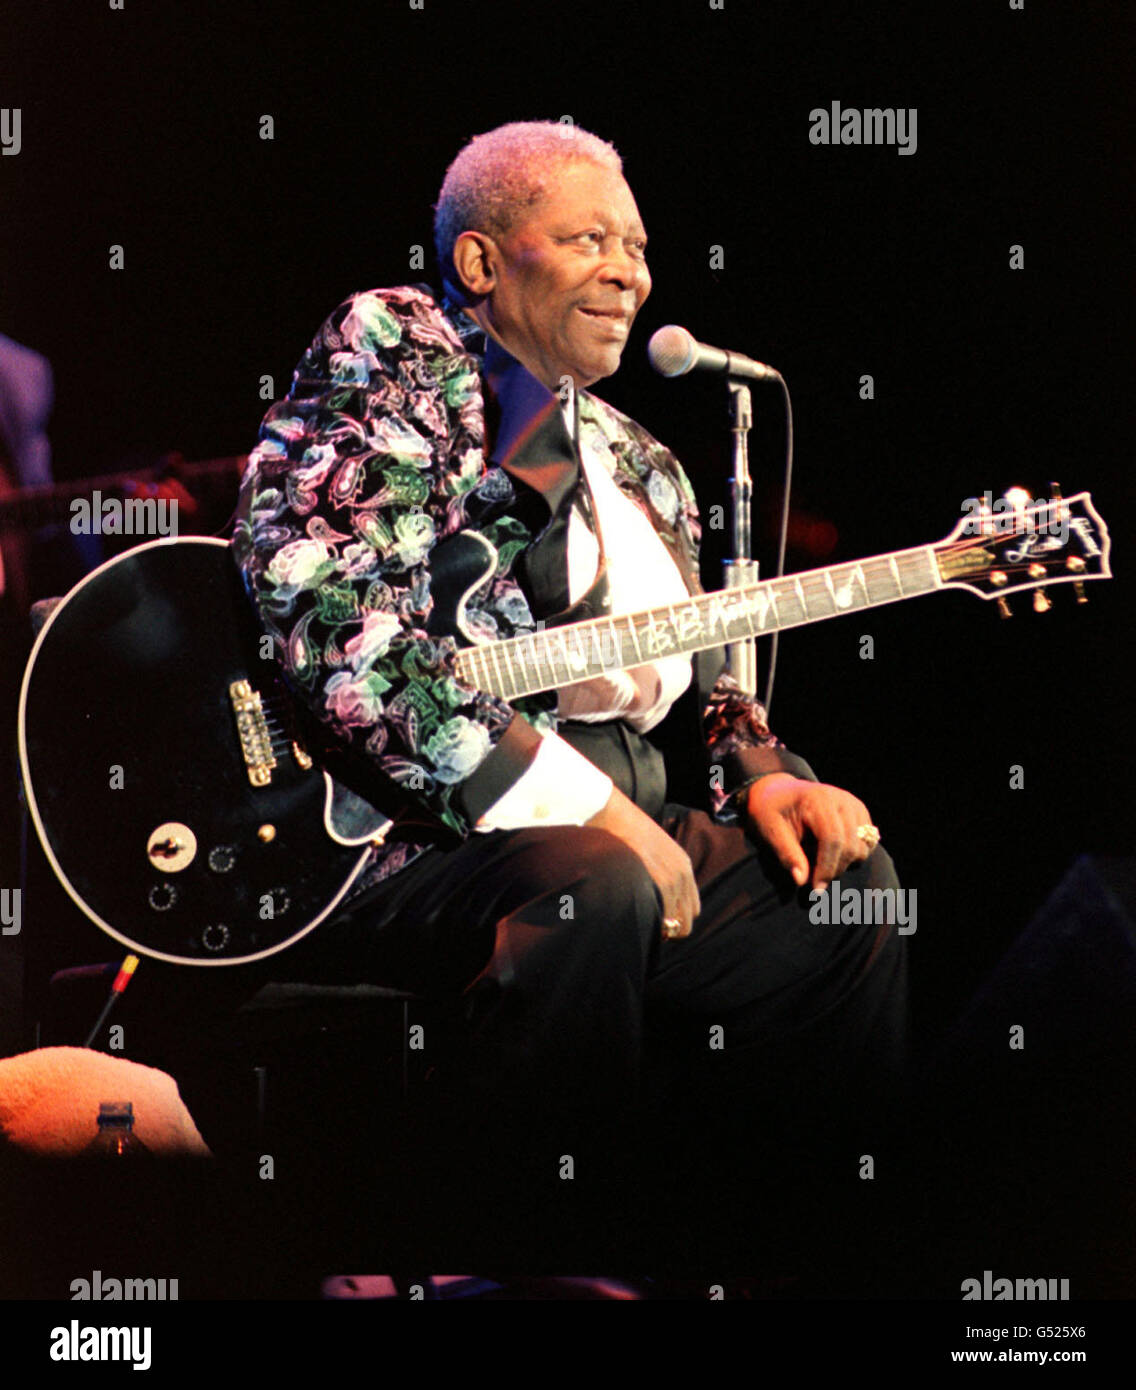 Le chanteur de blues américain BB King se présente sur scène au Hammersmith Apollo Theatre, à l'ouest de Londres. Banque D'Images